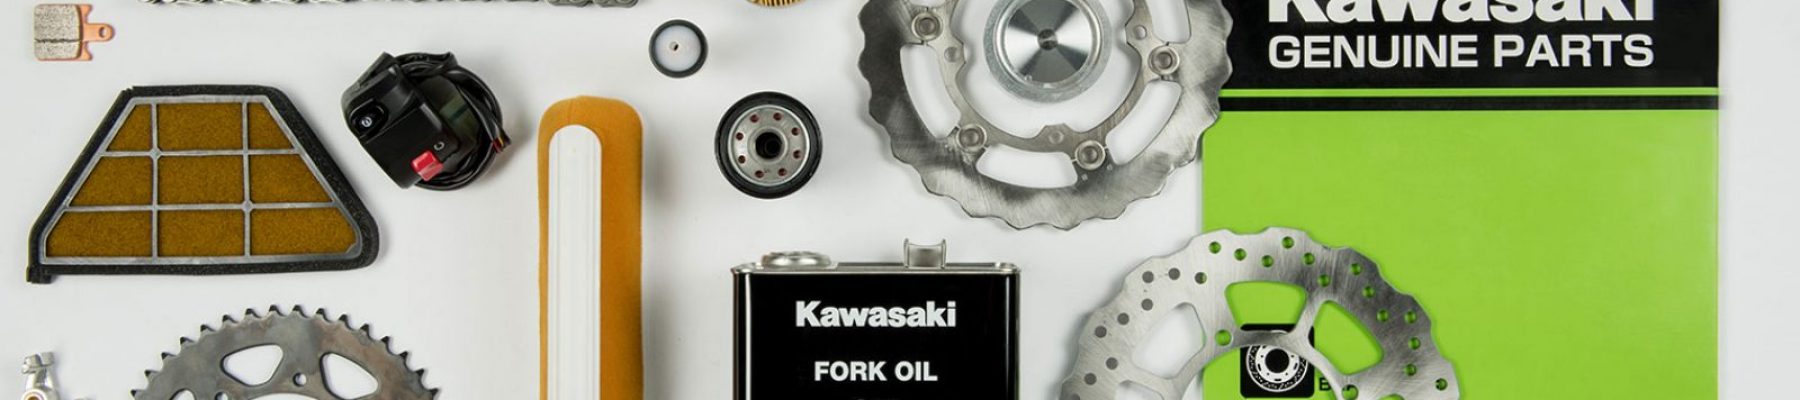 Kawasaki spare parts header image